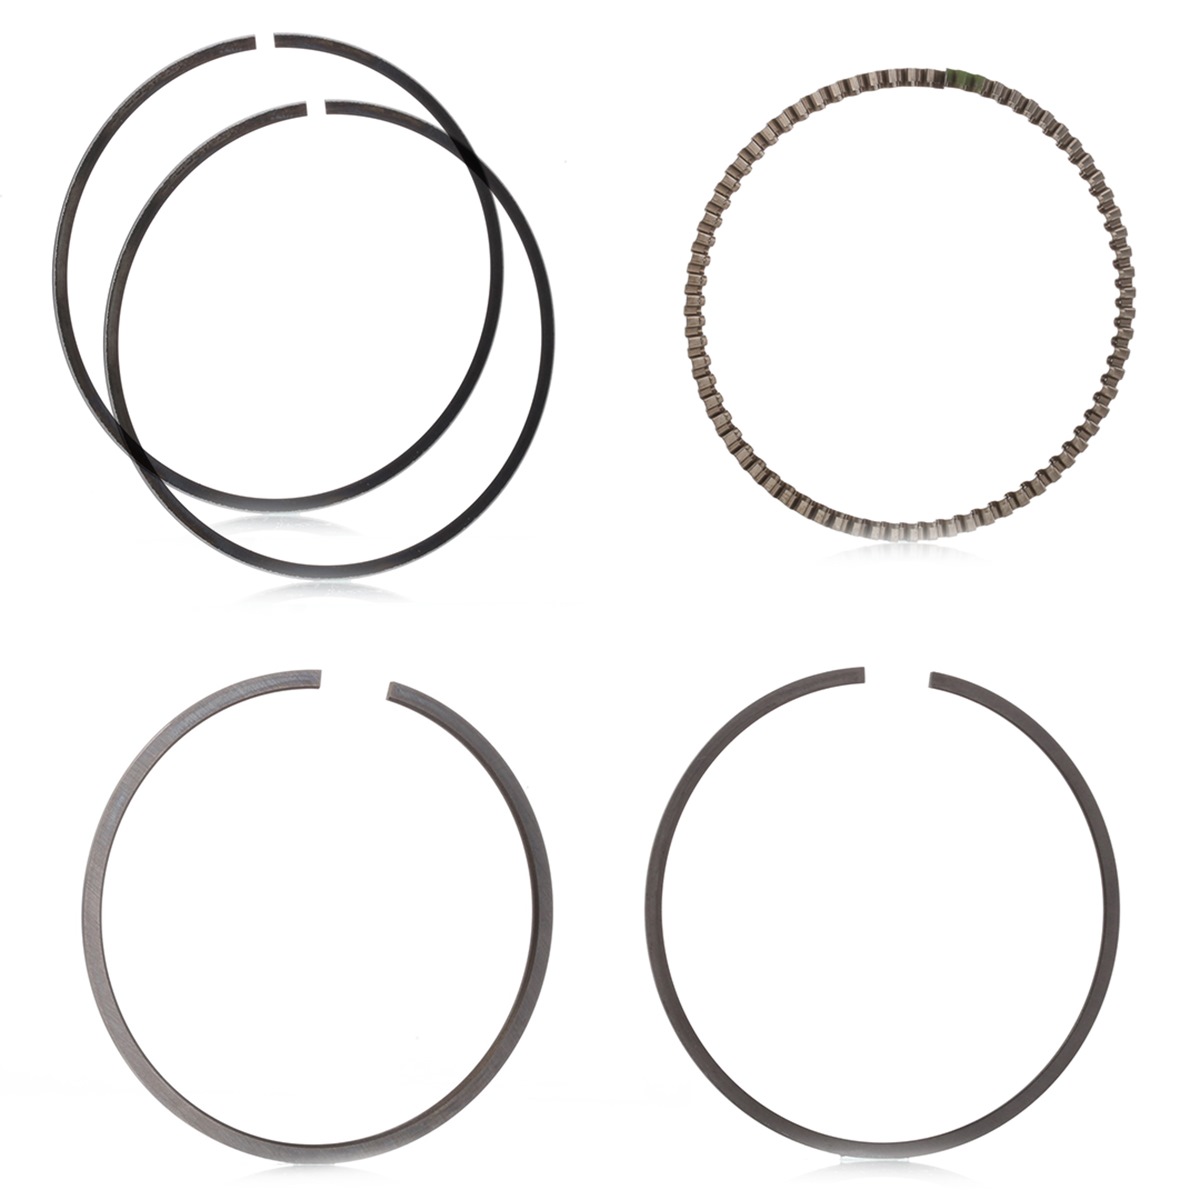 Image of MAHLE ORIGINAL Piston Ring Kit RENAULT,NISSAN,DACIA 022 16 N0 7701472982,7701475787,7701477843 Piston Ring Set